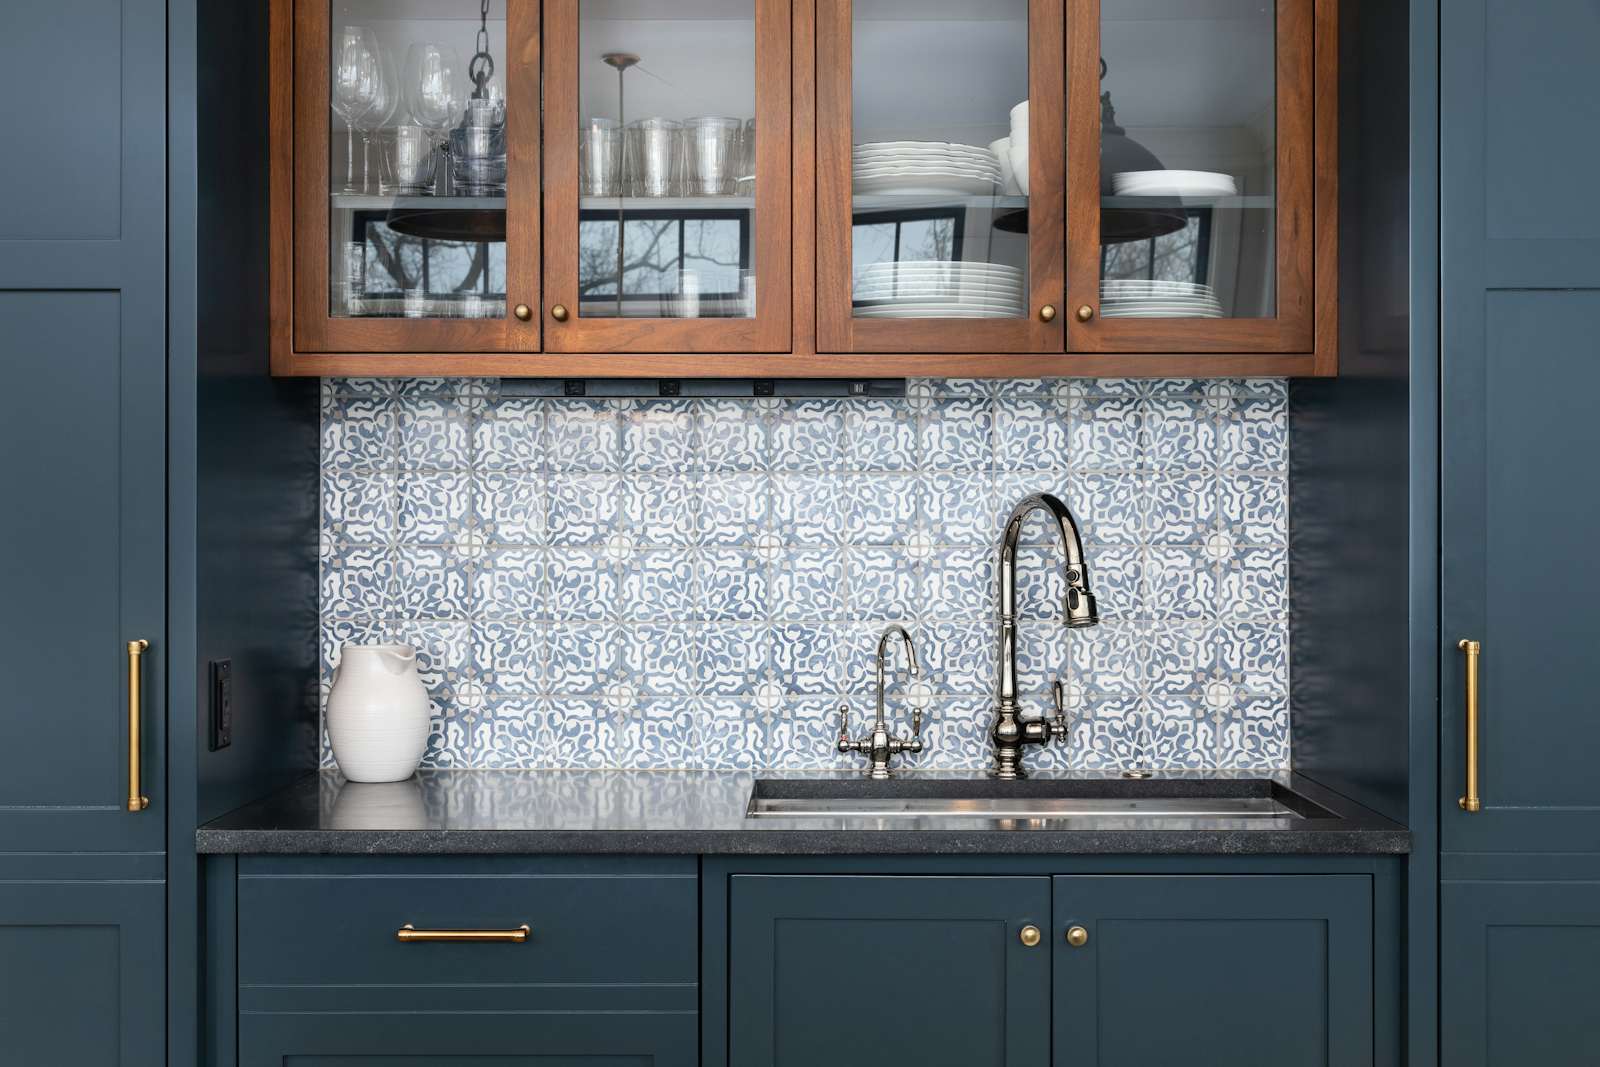 Kitchen sink modern home features